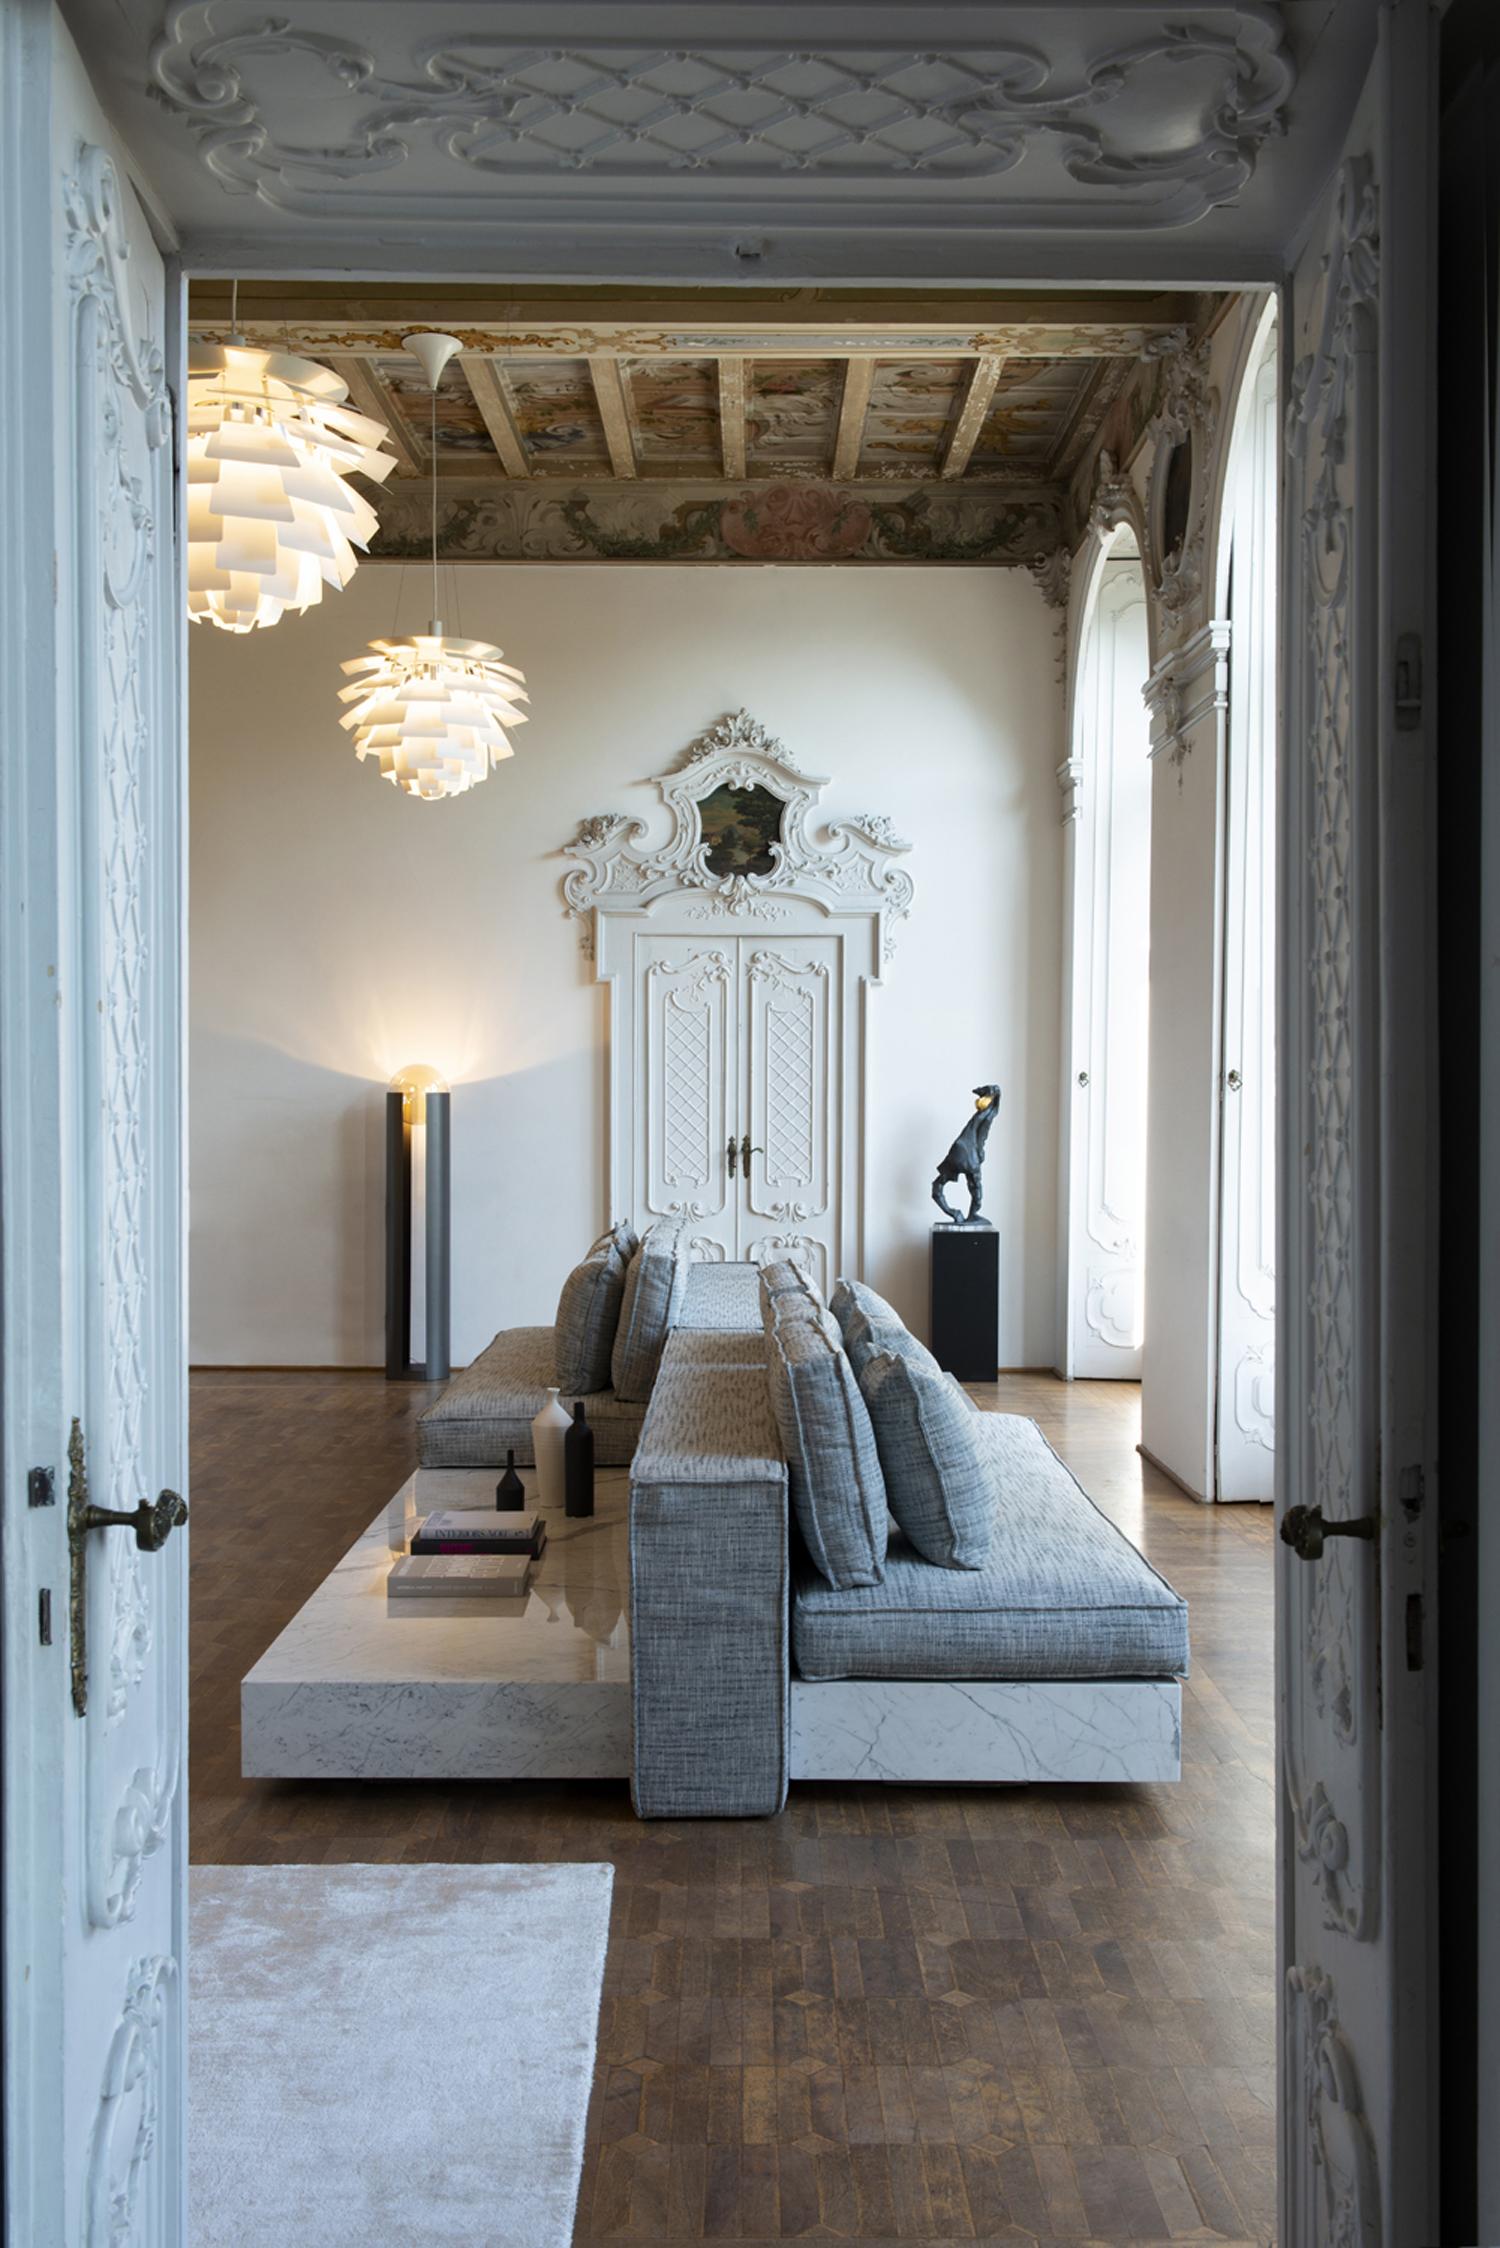 Le canapé Infinity est un canapé sectionnel en marbre de Carrare ? Il s'agit d'une qualité rare de marbre qui est extraite des carrières de Bettogli dans le nord de la Toscane, d'où il tire son nom.
Le concept du canapé Infinity est basé sur la